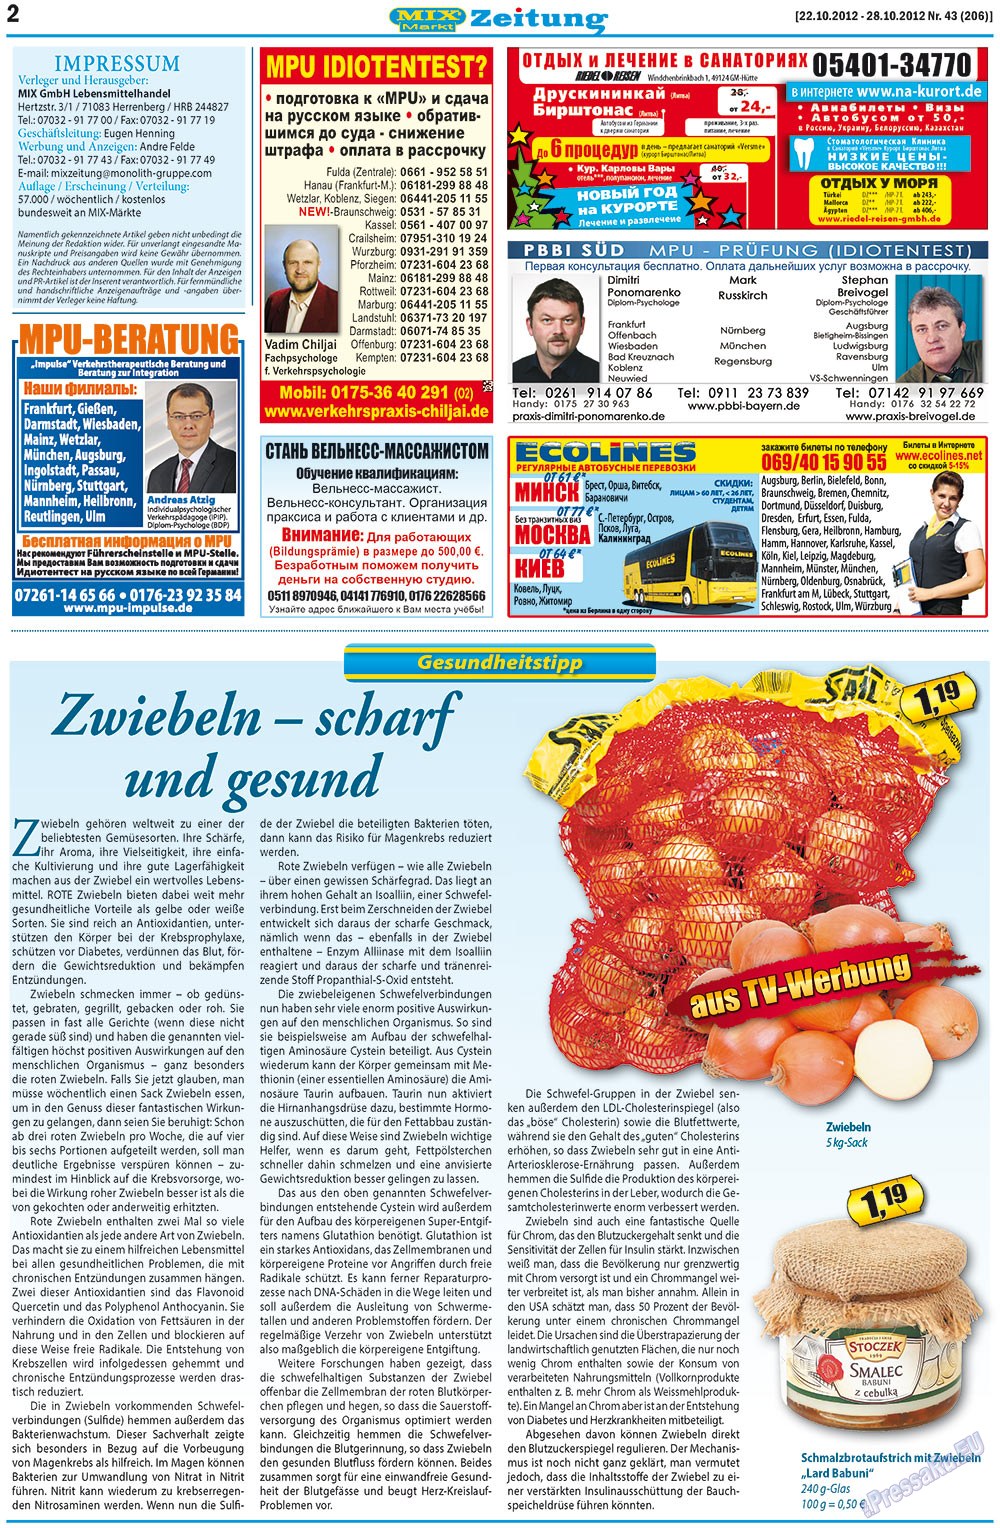 MIX-Markt Zeitung (газета). 2012 год, номер 43, стр. 2